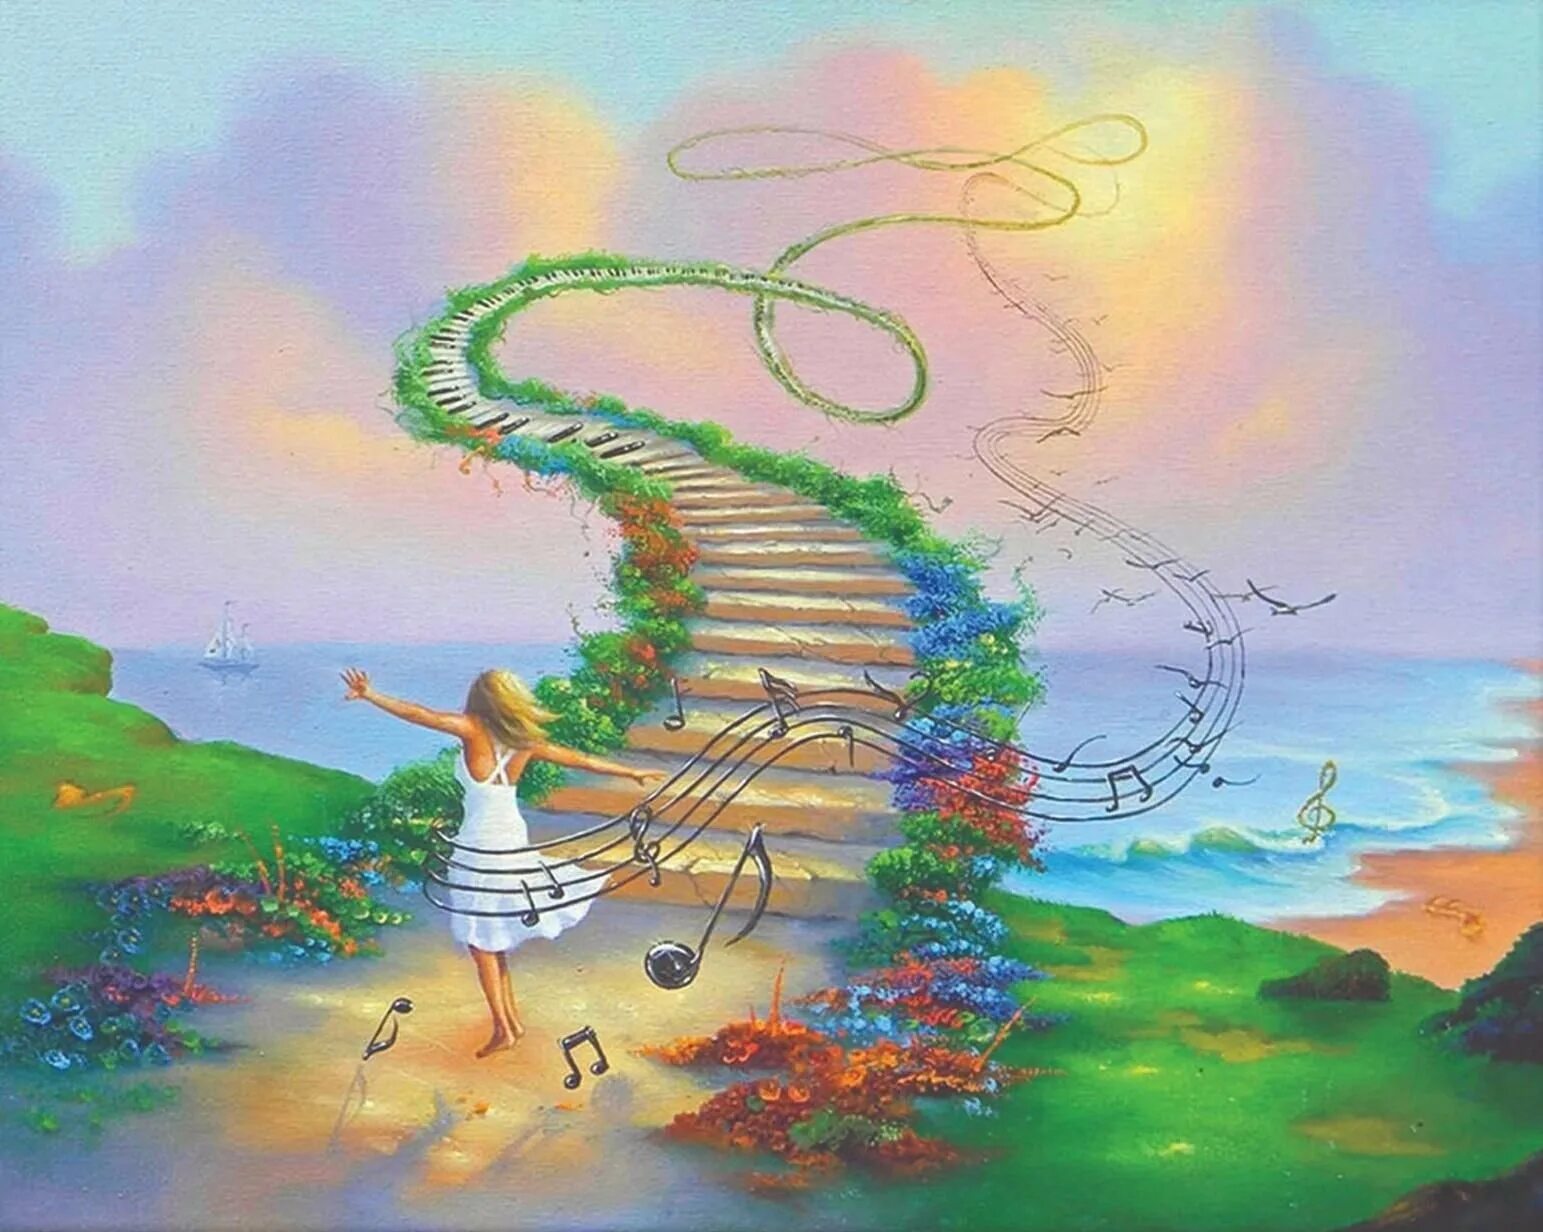 Джим Уоррен (Jim Warren) (р.1949). Лестница в небо Джим Уоррен. Мечта рисунок. Фантазийные рисунки. Развитие вдохновения